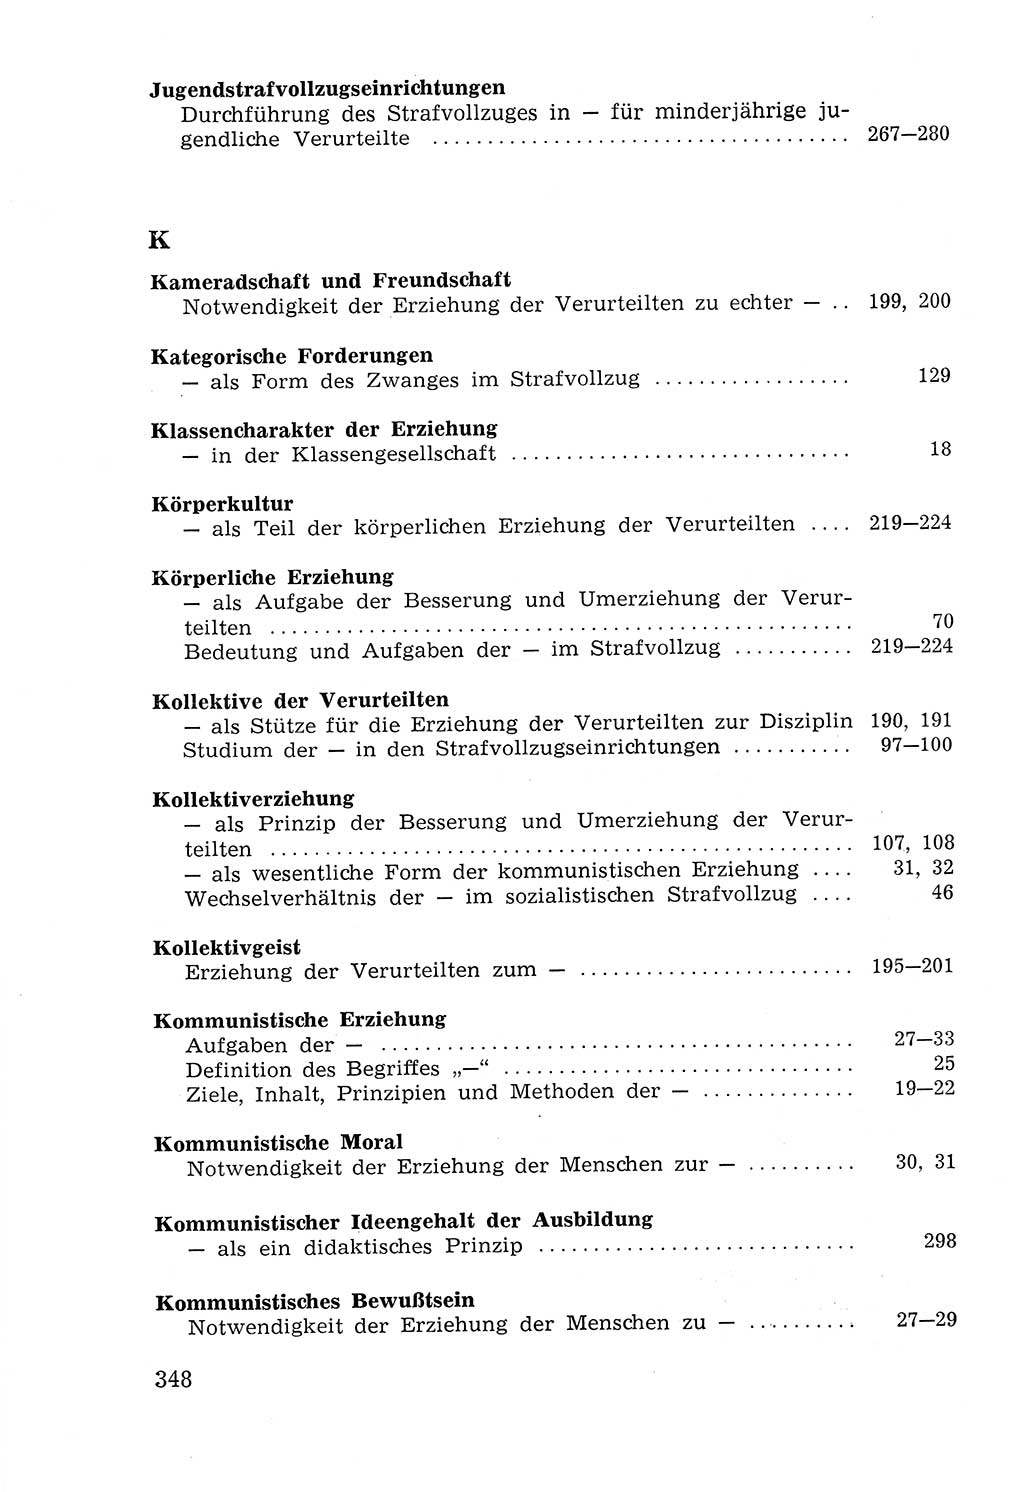 Lehrbuch der Strafvollzugspädagogik [Deutsche Demokratische Republik (DDR)] 1969, Seite 348 (Lb. SV-Pd. DDR 1969, S. 348)